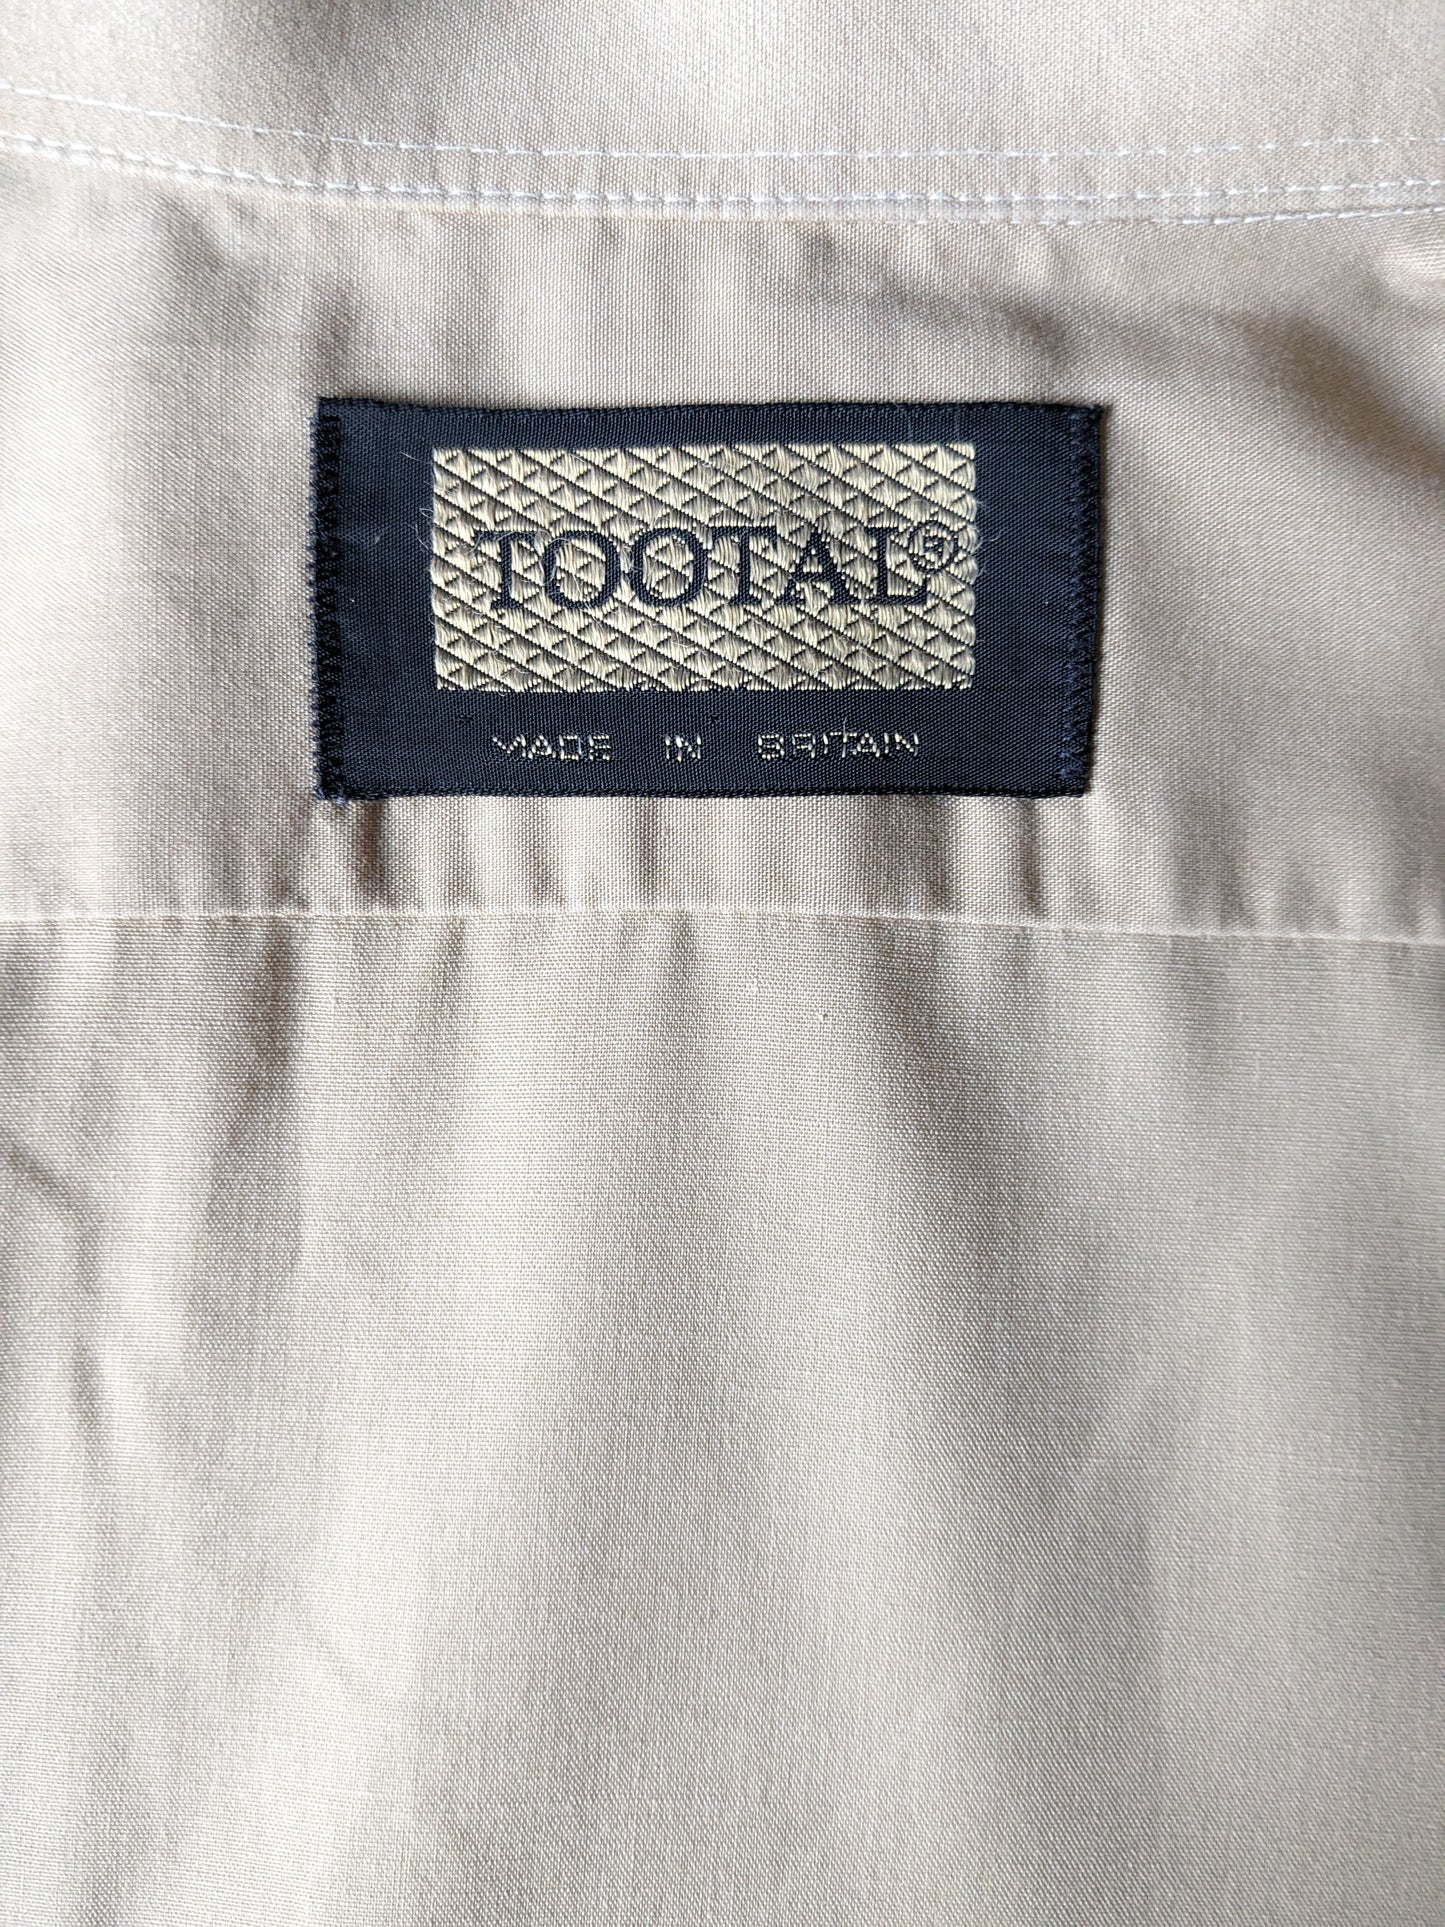 Chemise de Tootal des années 70 vintage avec collier. De couleur marron clair. Taille M.